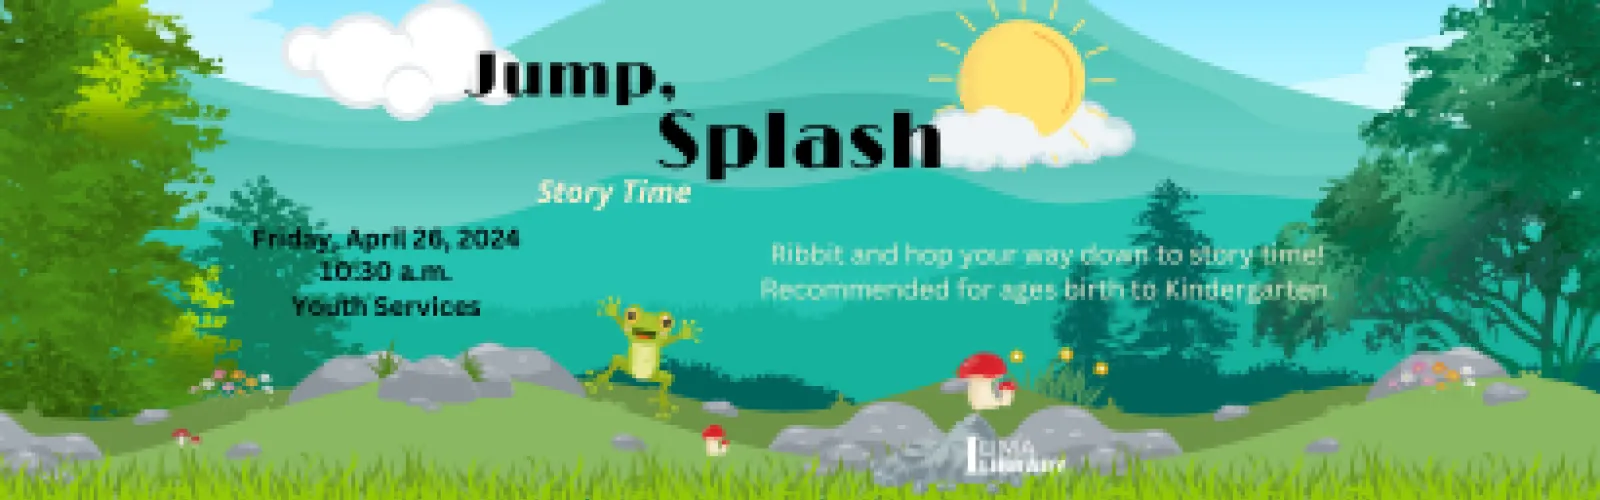 Story Time: Jump, Splash Flyer Image